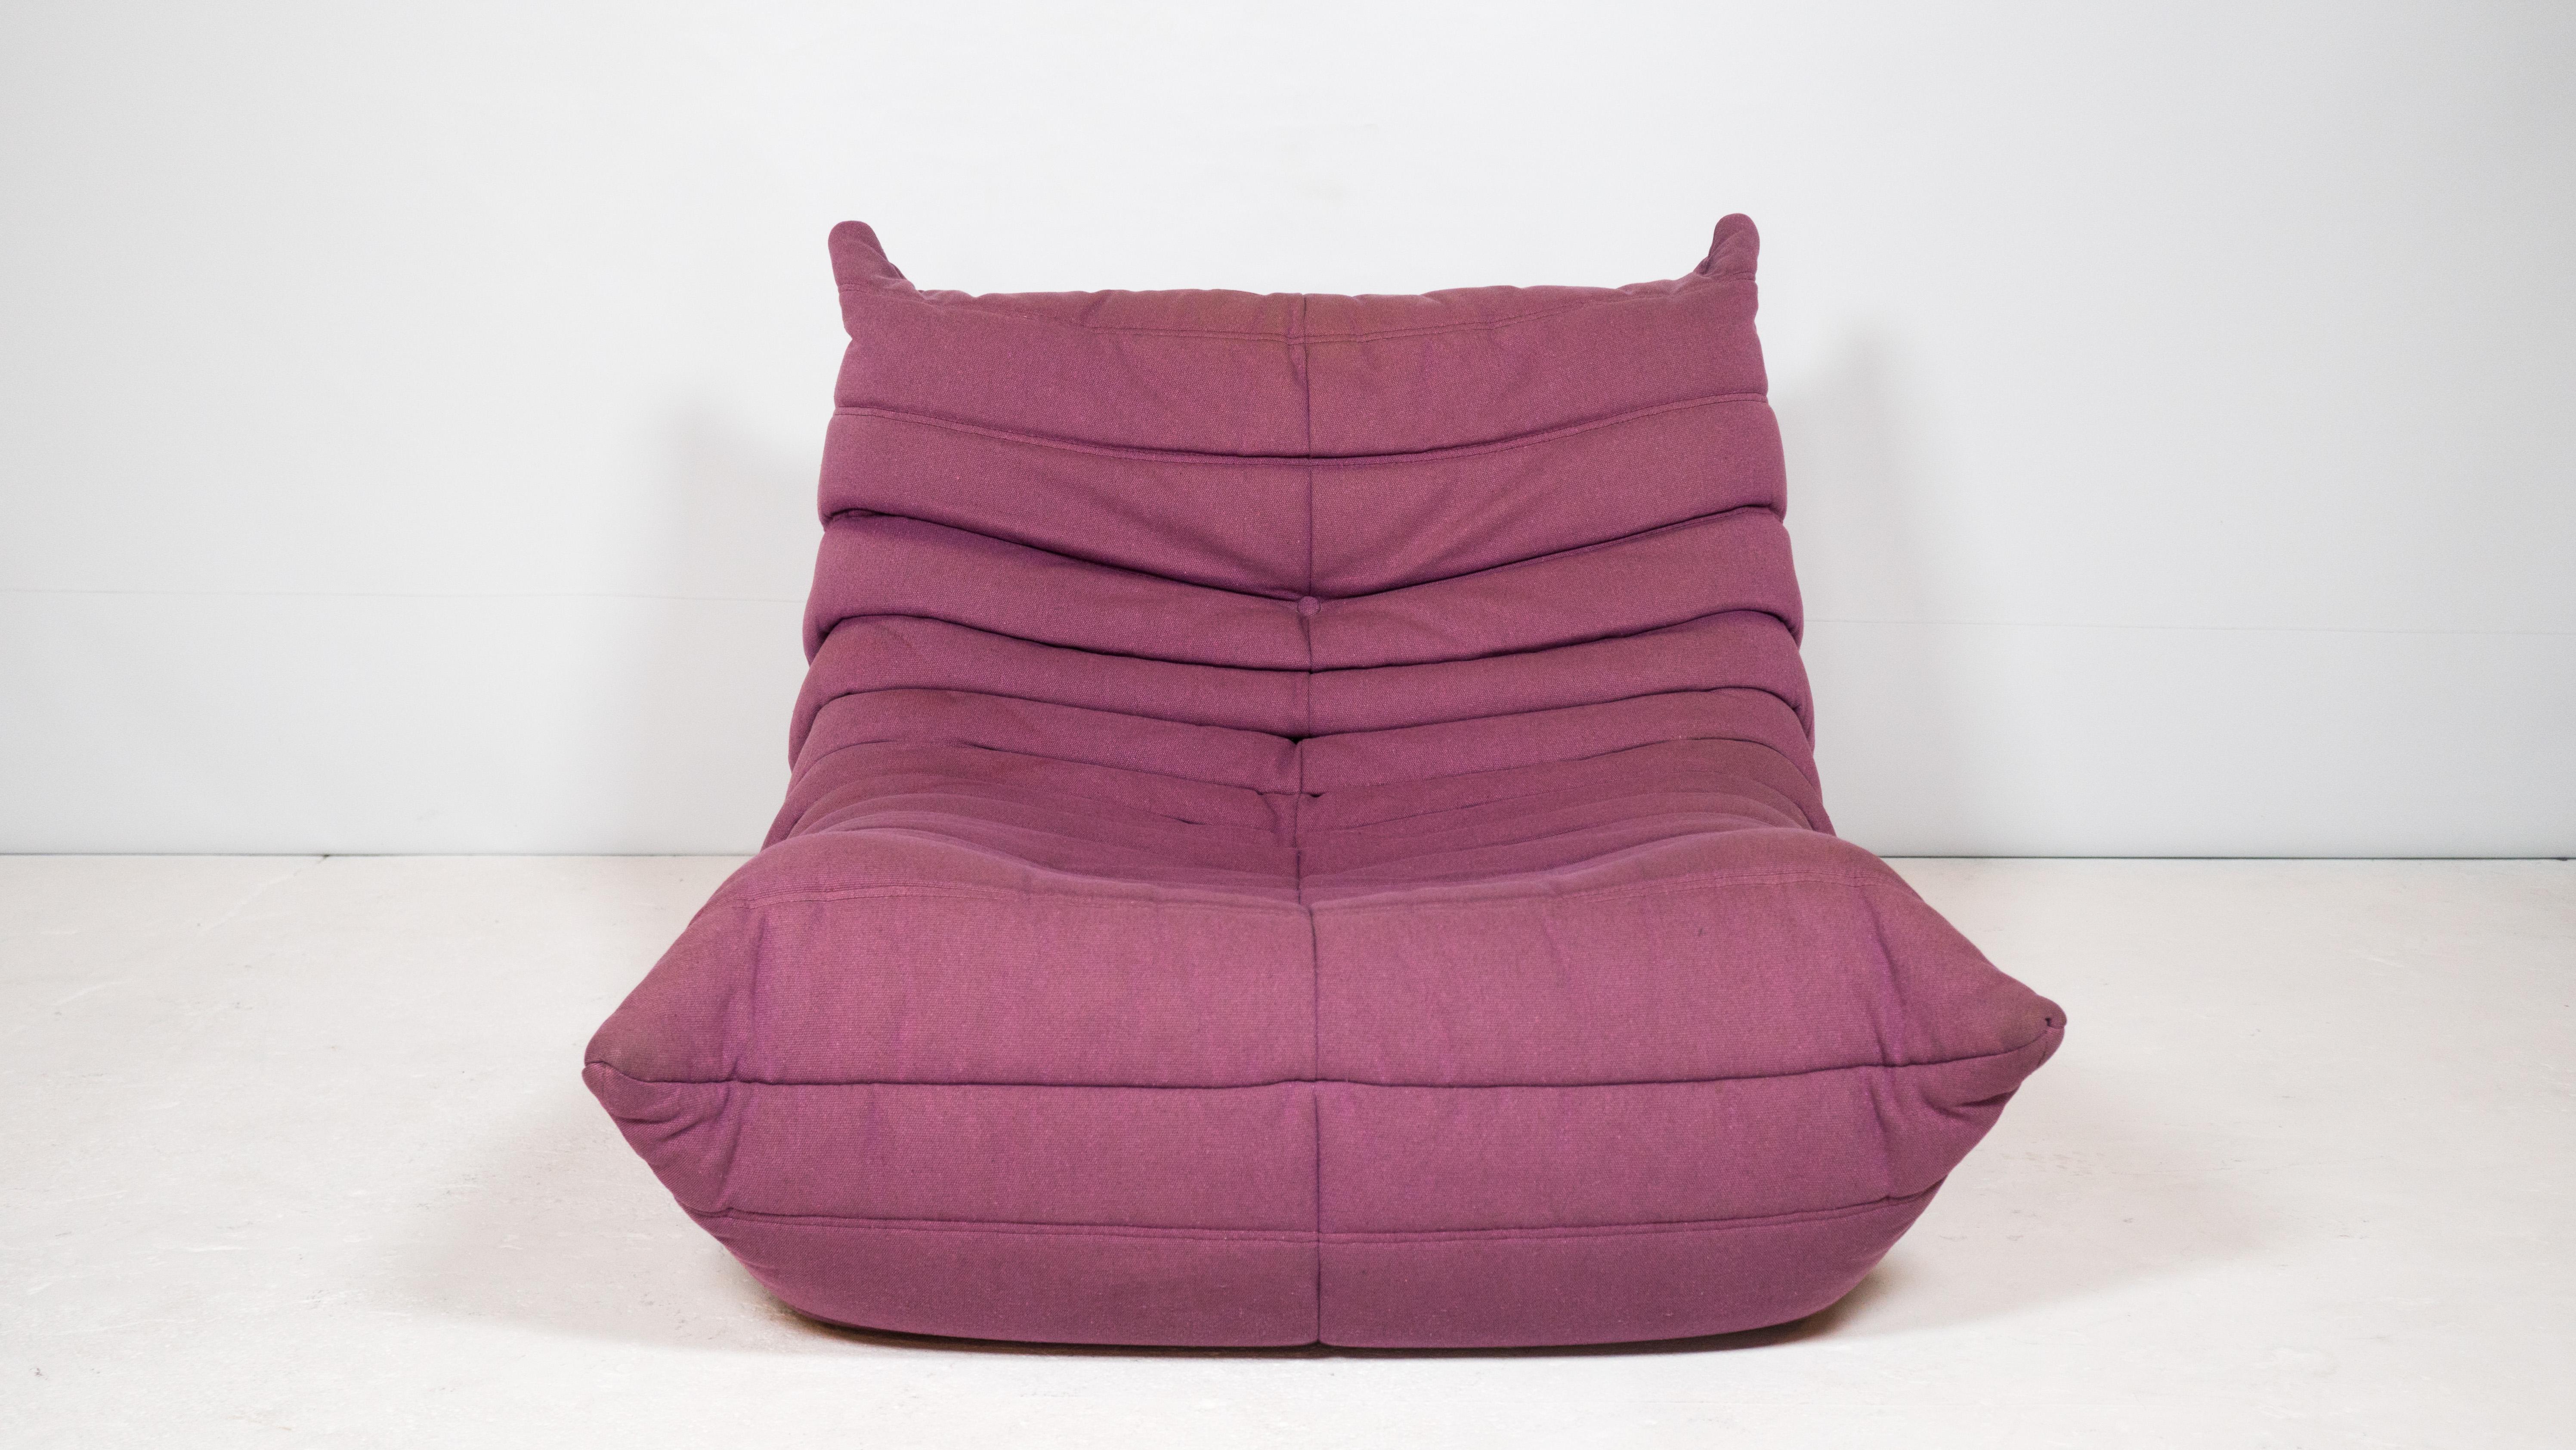 Ligne Roset Togo Fireside chair by Michel Ducaroy in original thick purple linen fabric, circa 2000s. Un design fantaisiste et une forme unique qui sont à la fois agréables à l'œil et physiquement invitants. Une expérience ludique et engloutissante.